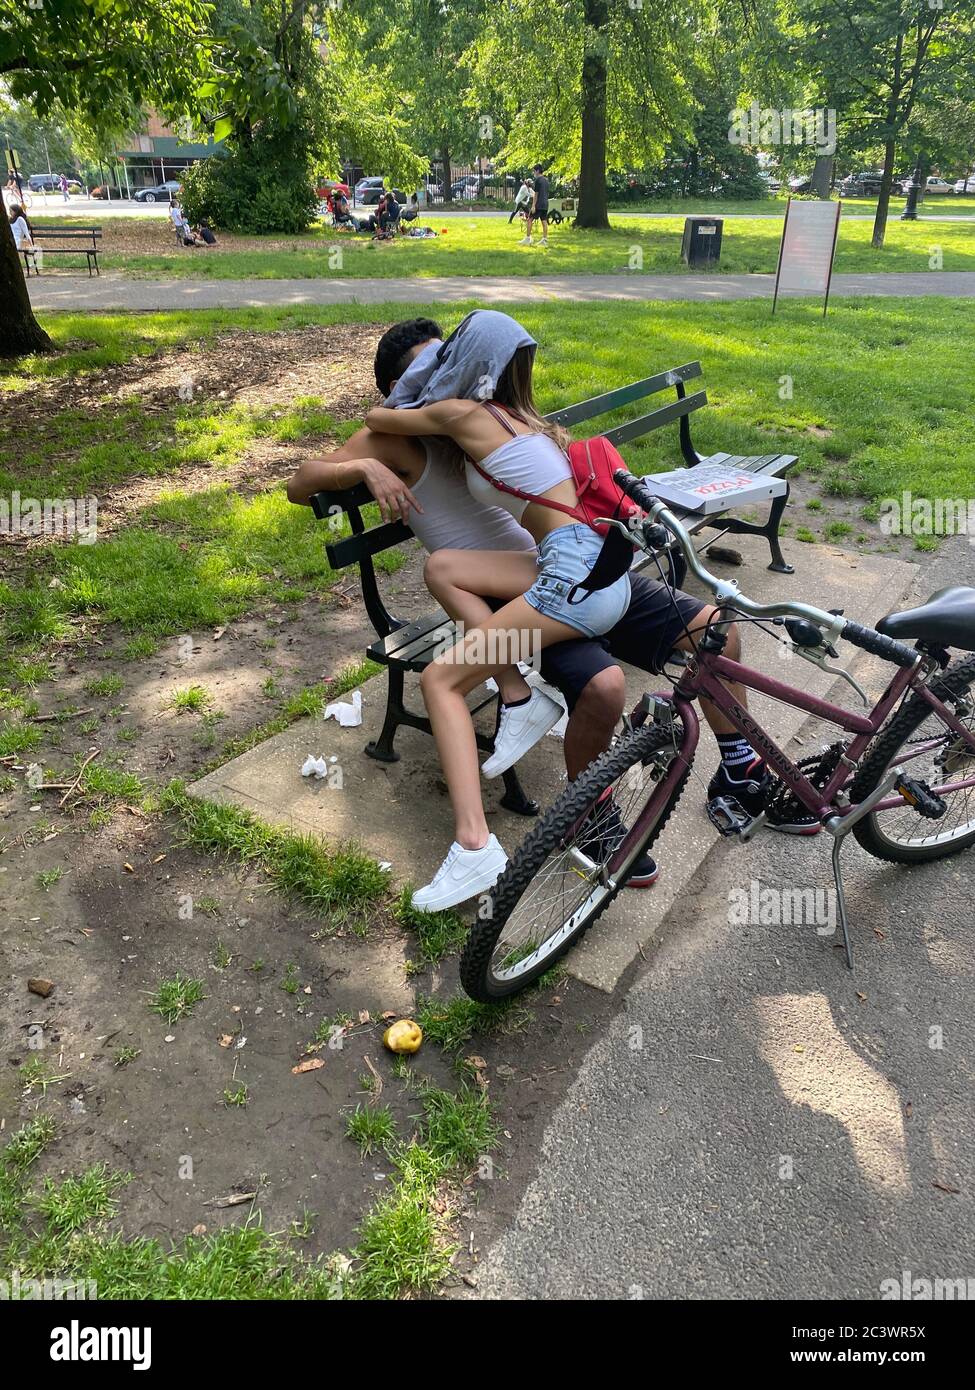 Liebe und Romantik sind manchmal Präzedenzfall für die "soziale Distanzierung" während der Covid-19-Pandemie, wie sie hier im Prospect Park, Brooklyn, New York, zu sehen ist. Stockfoto